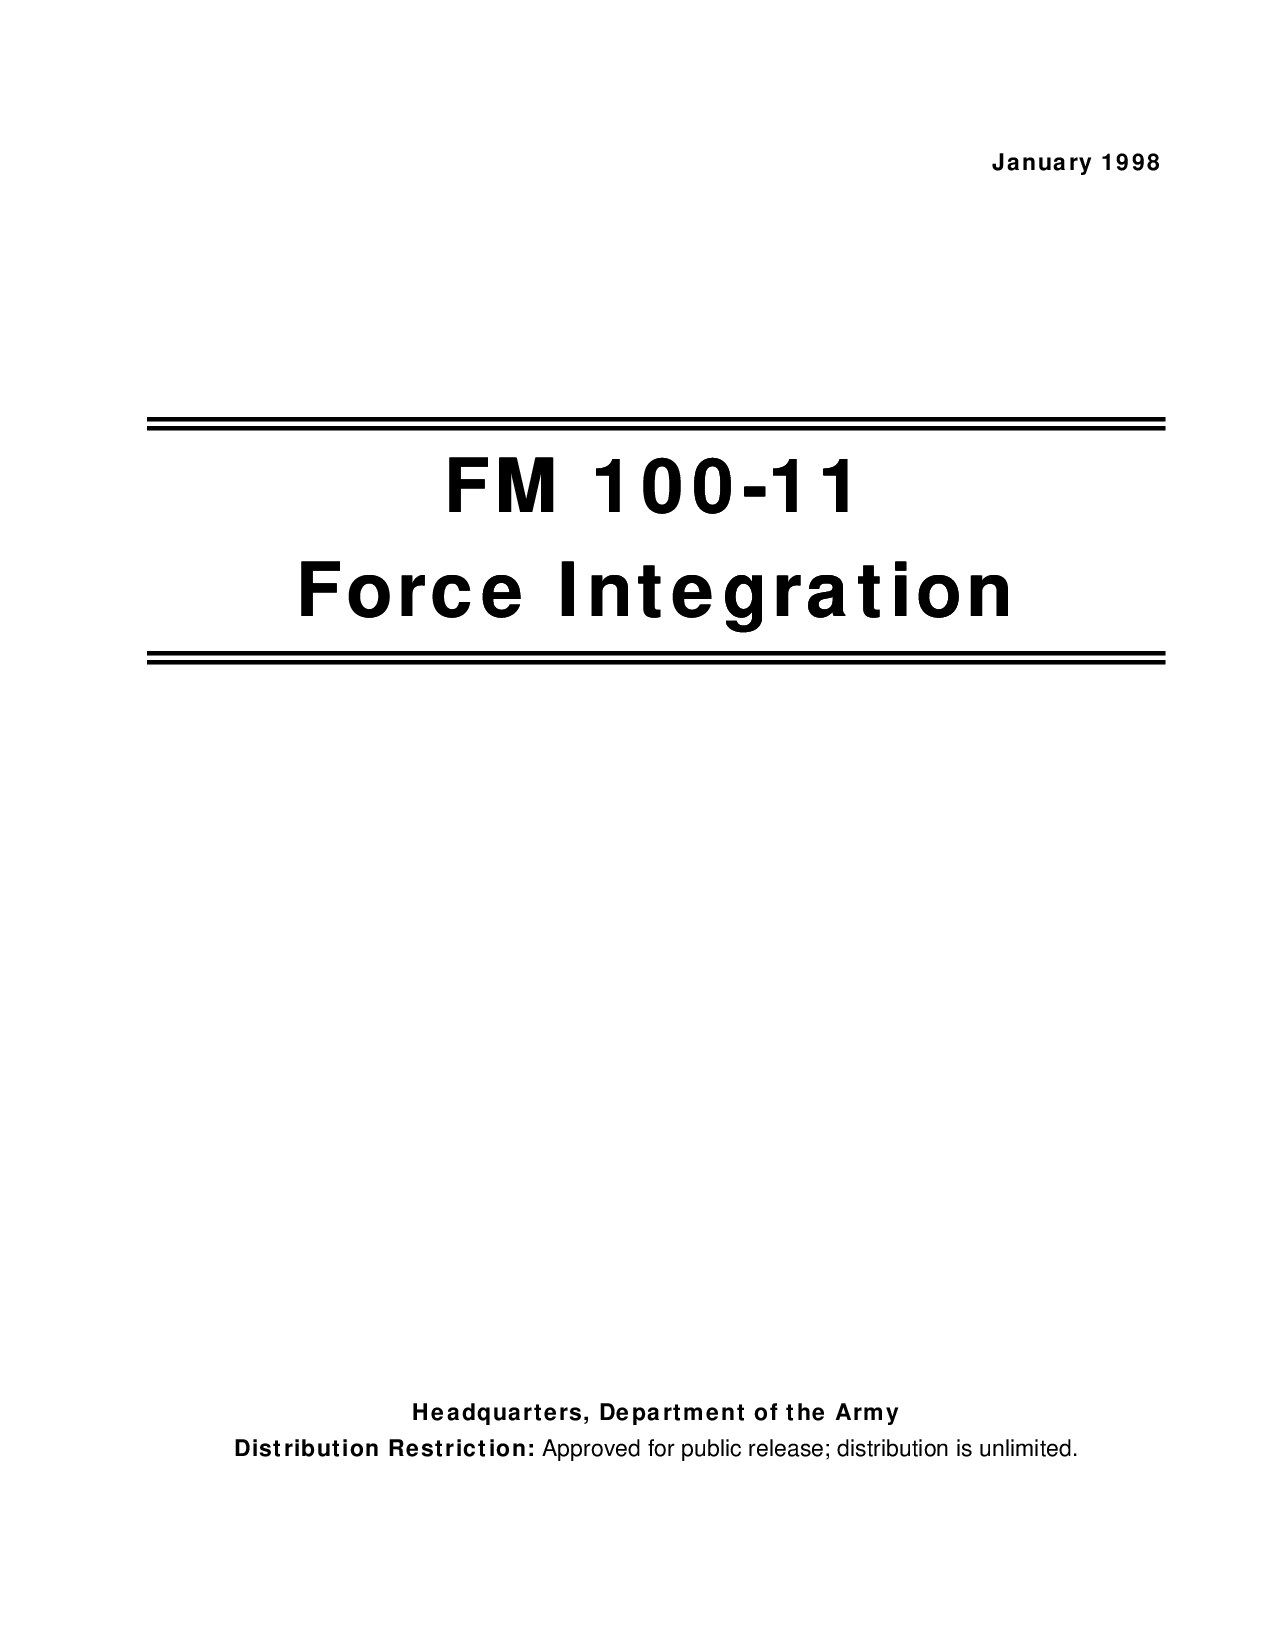 Force Integration